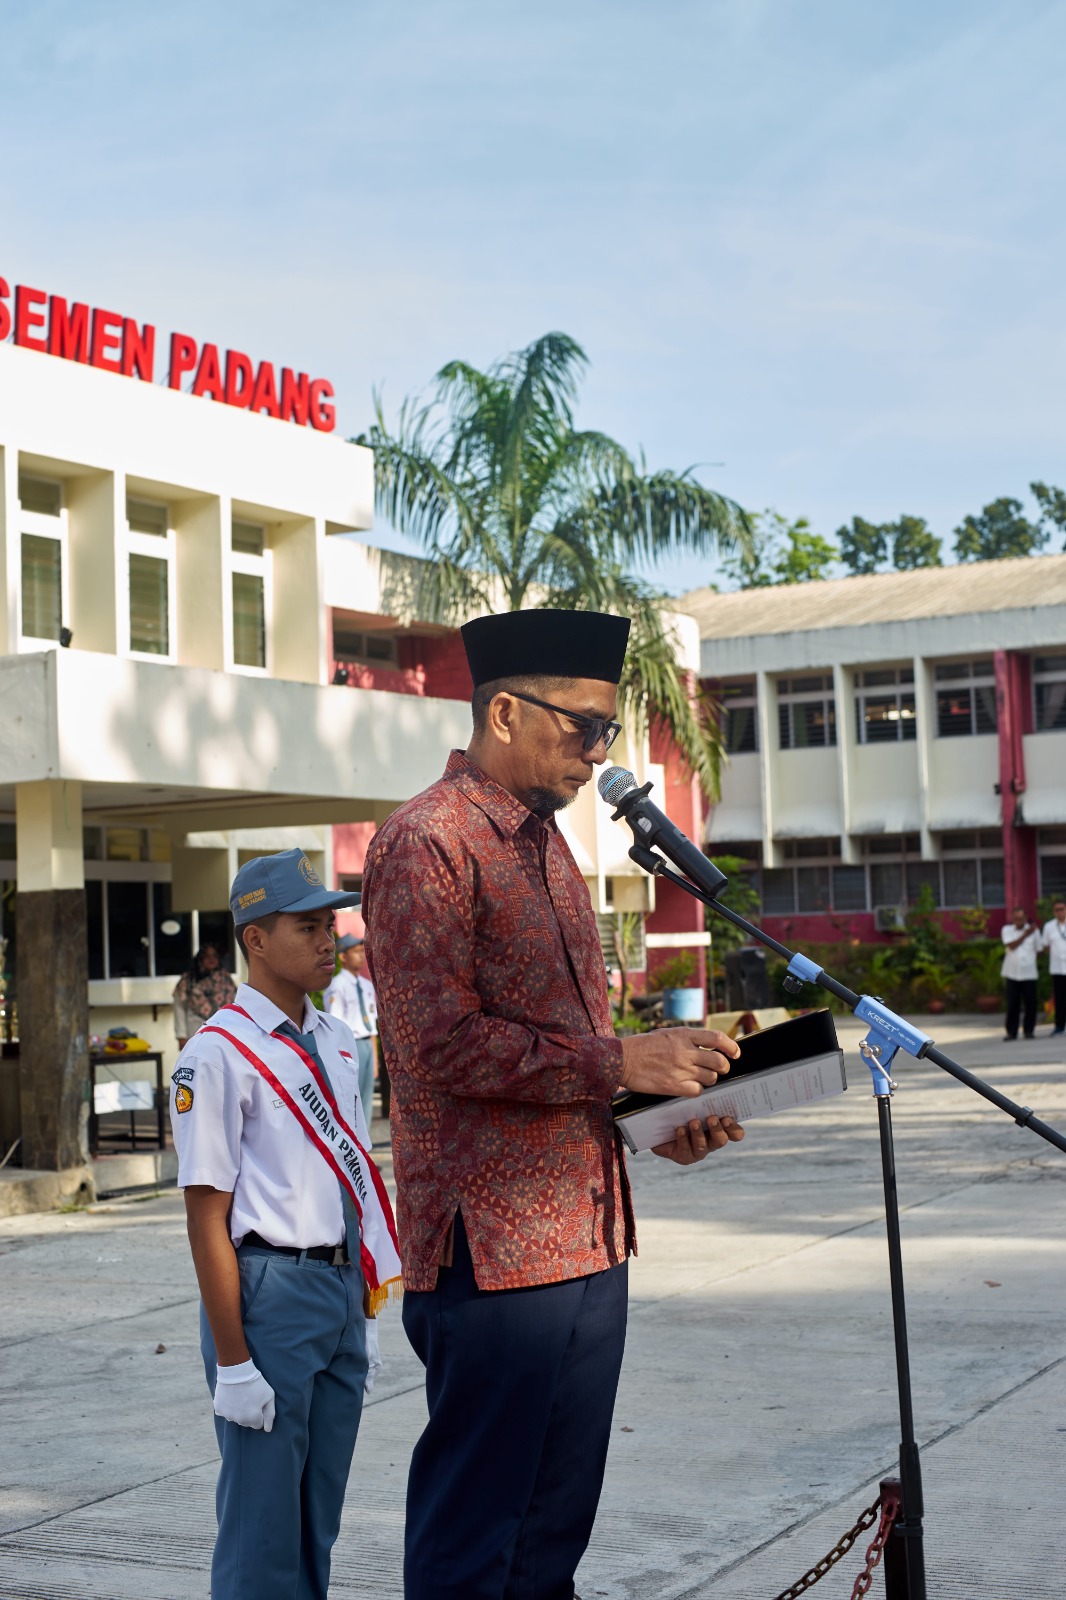 Ketua Peradi Cabang Padang, Miko Kamal, menjadi pembina upacara di SMA Semen Padang. Foto dok Peradi Padang.